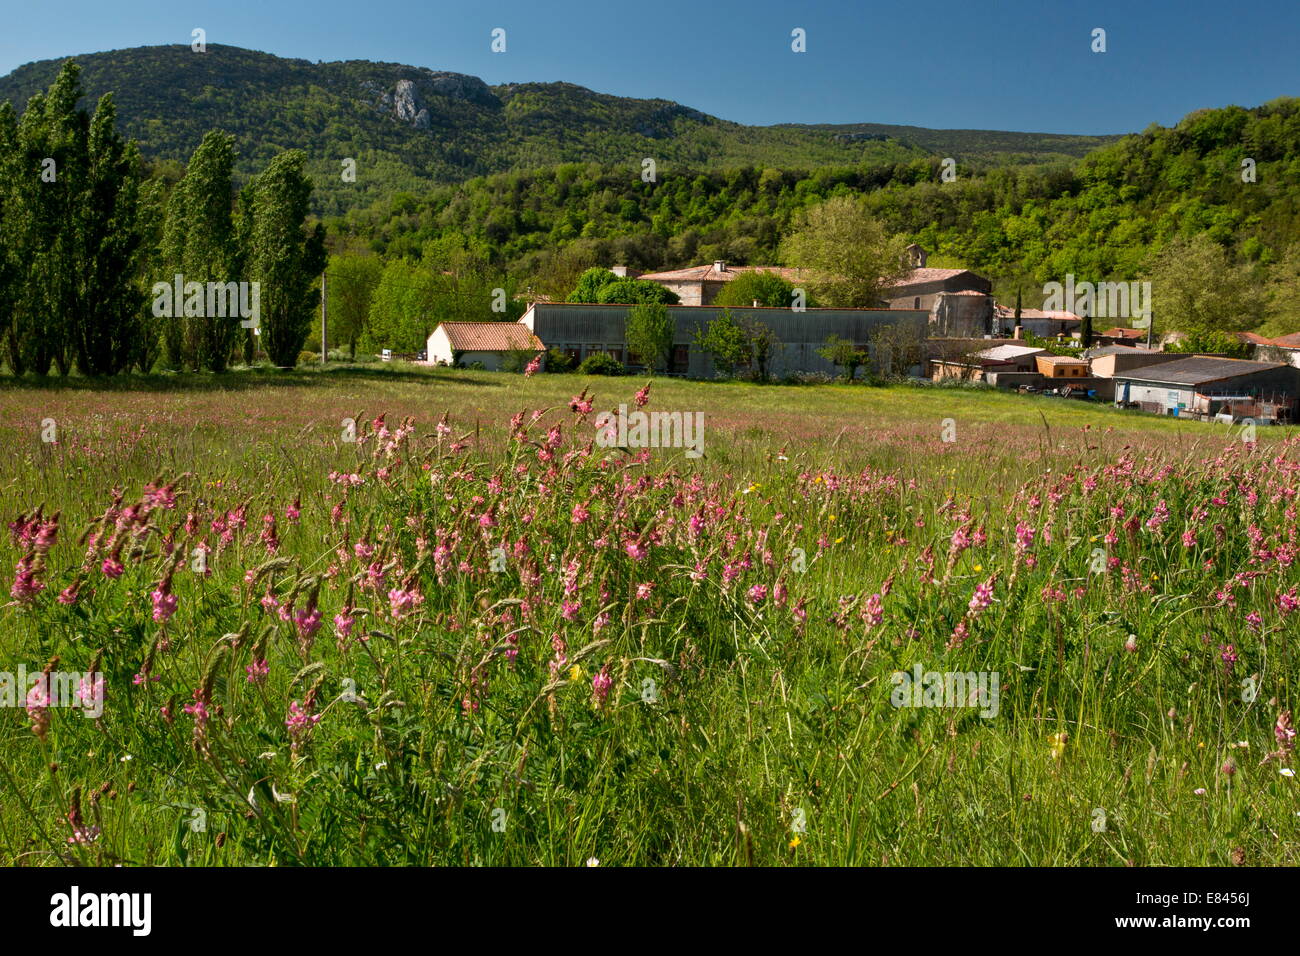 Champs fleuris avec Sainfoin et autres fleurs, regardant vers la forêt des fanges, Corbières, au sud-ouest de la France. Banque D'Images